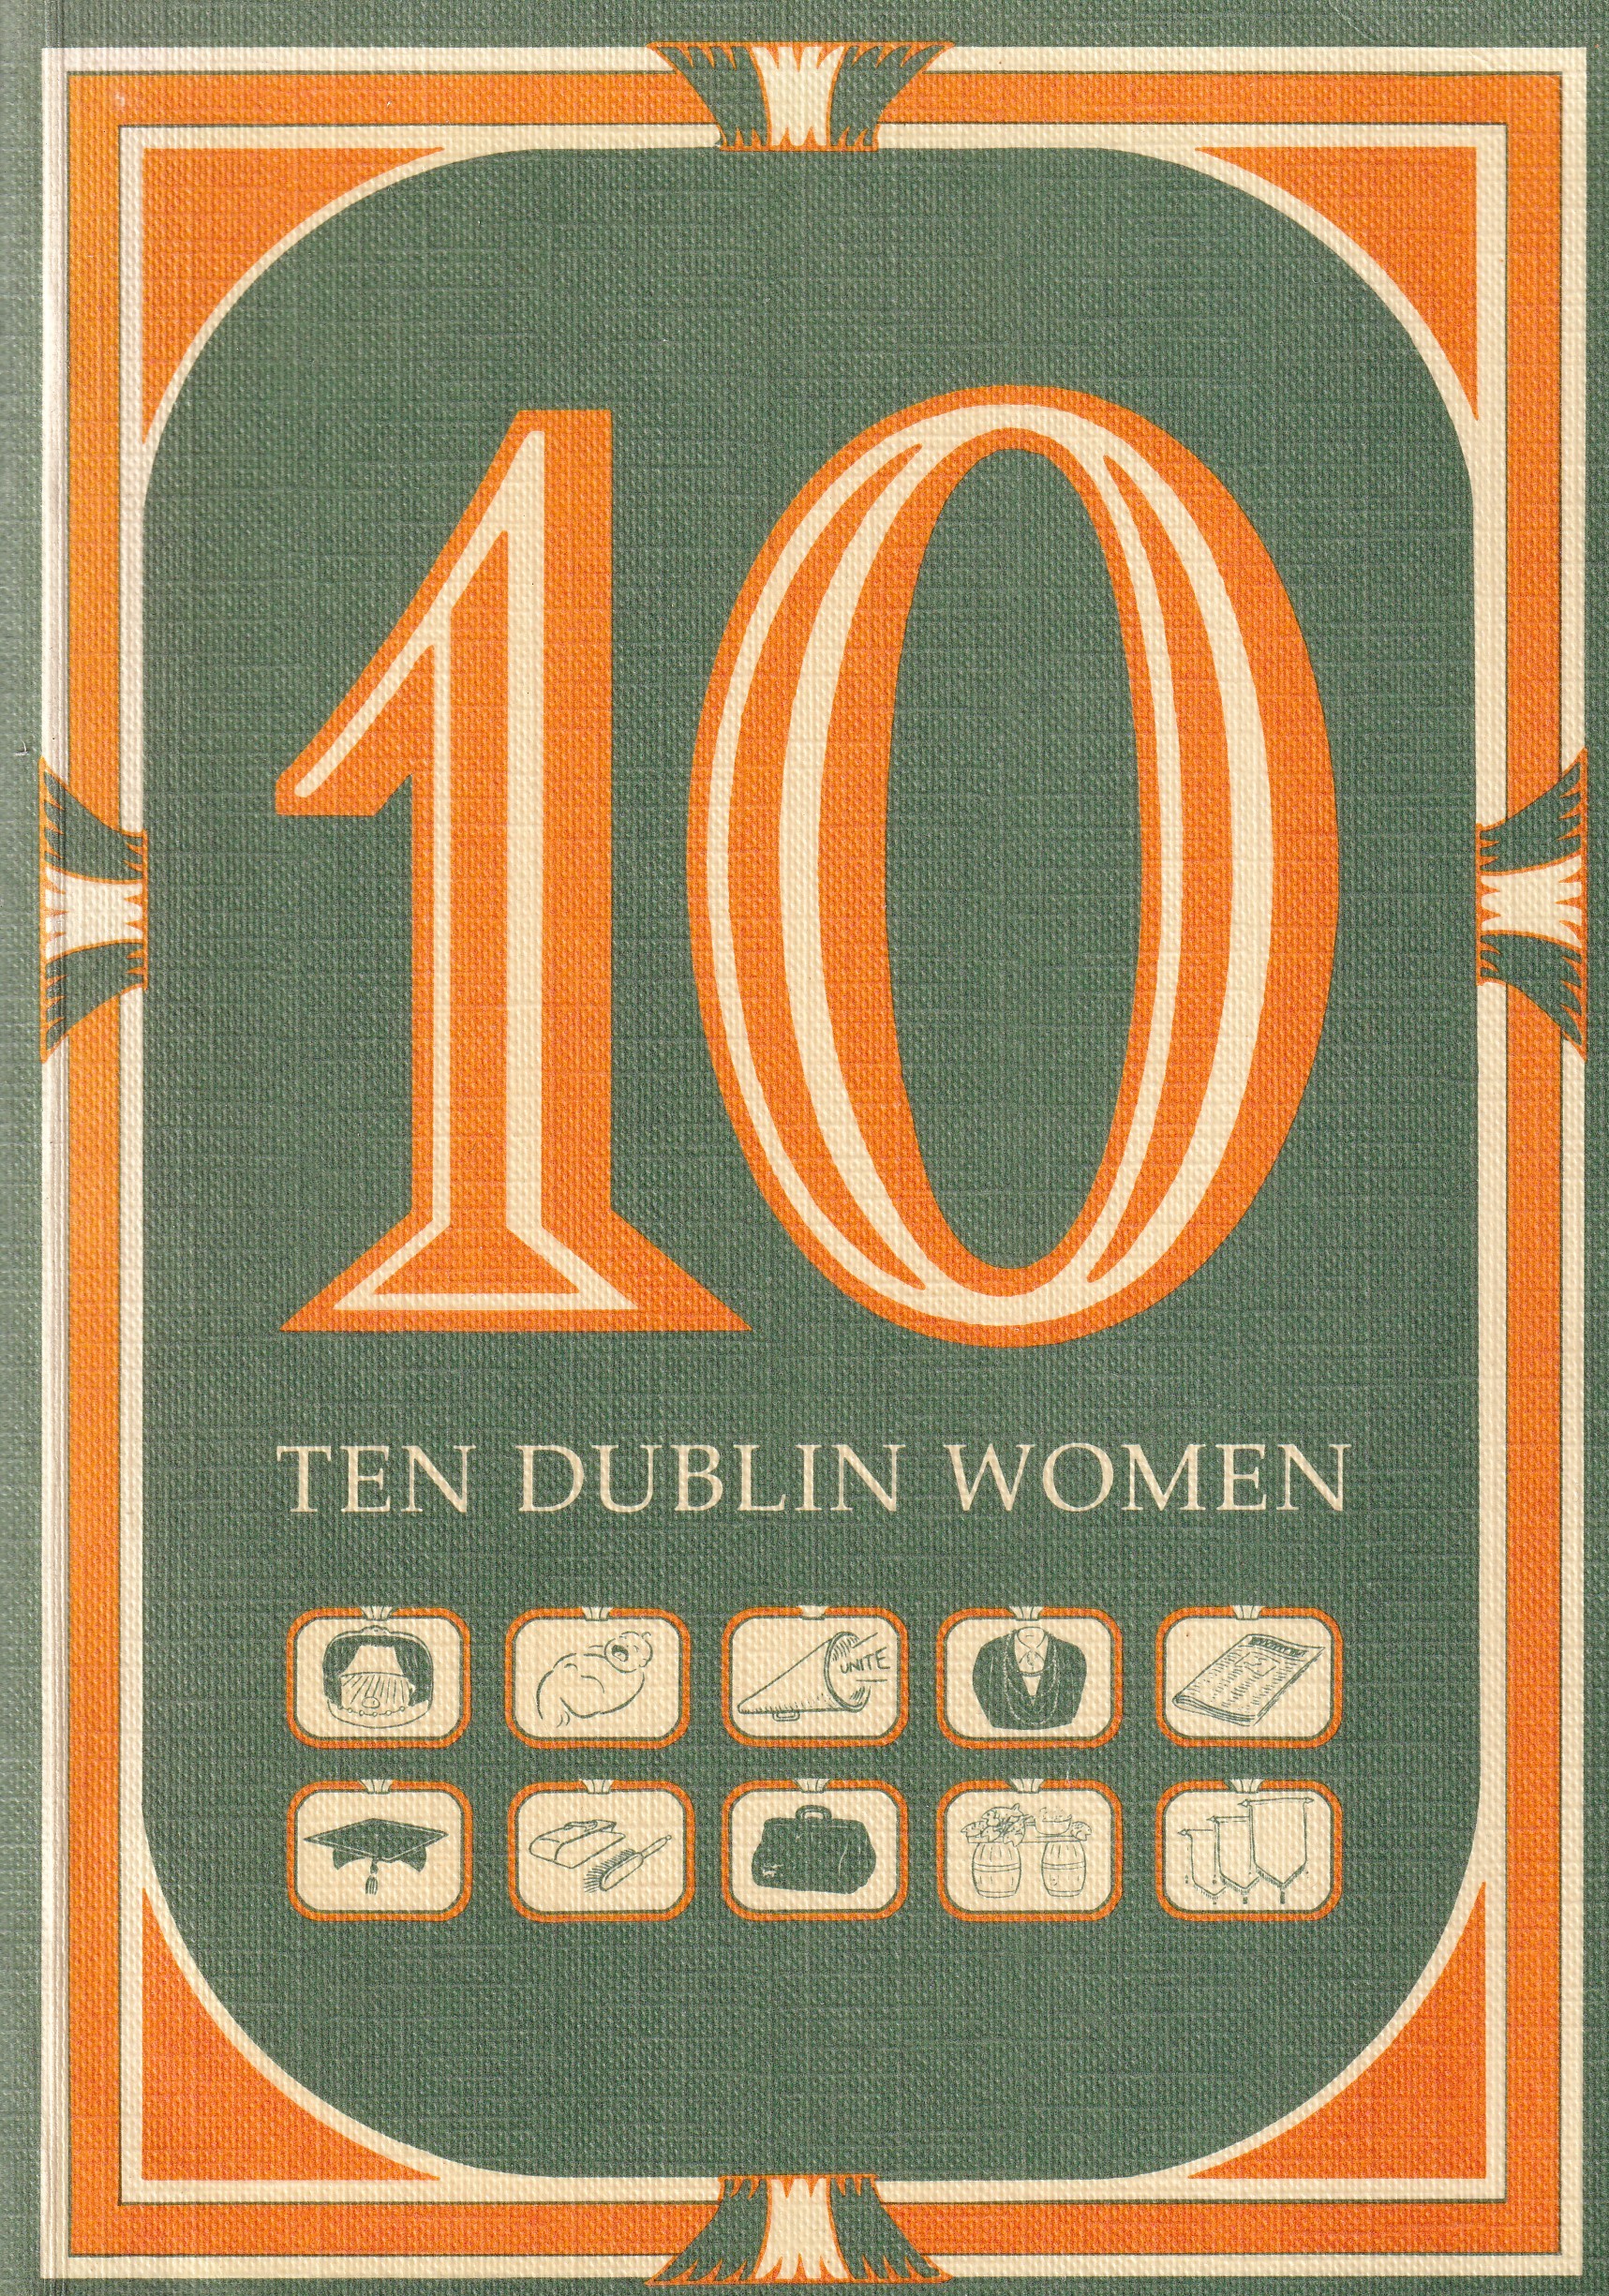 10 Dublin Women | Medb Ruane | Charlie Byrne's